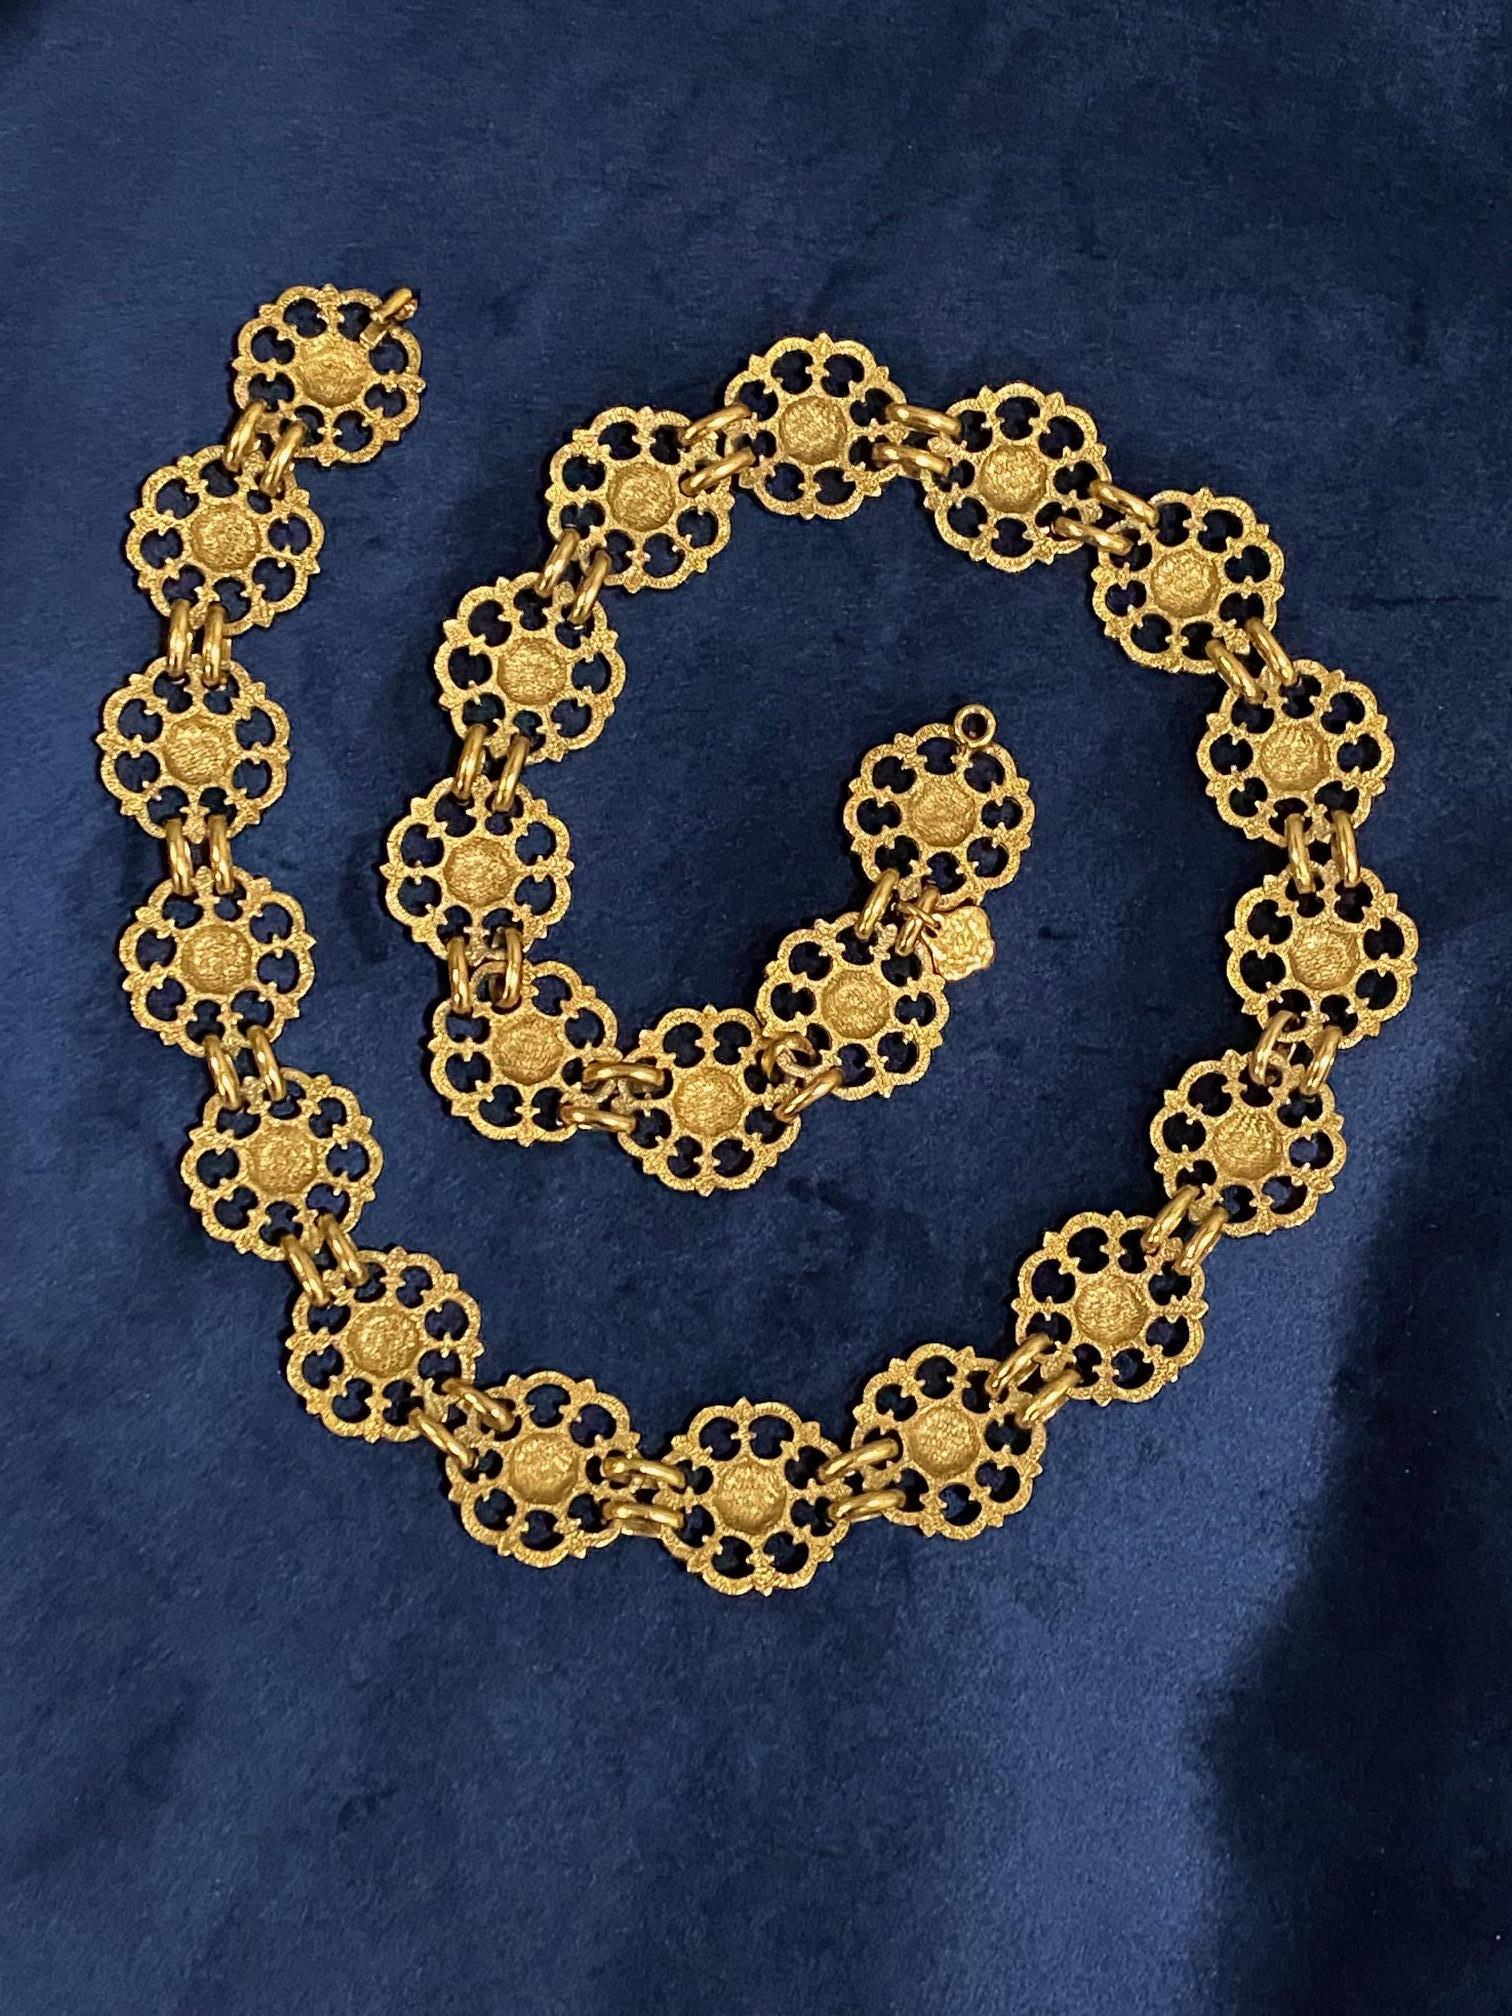 Yves Saint Laurent, Rive Gauche, 1980s Necklace / Belt For Sale 11